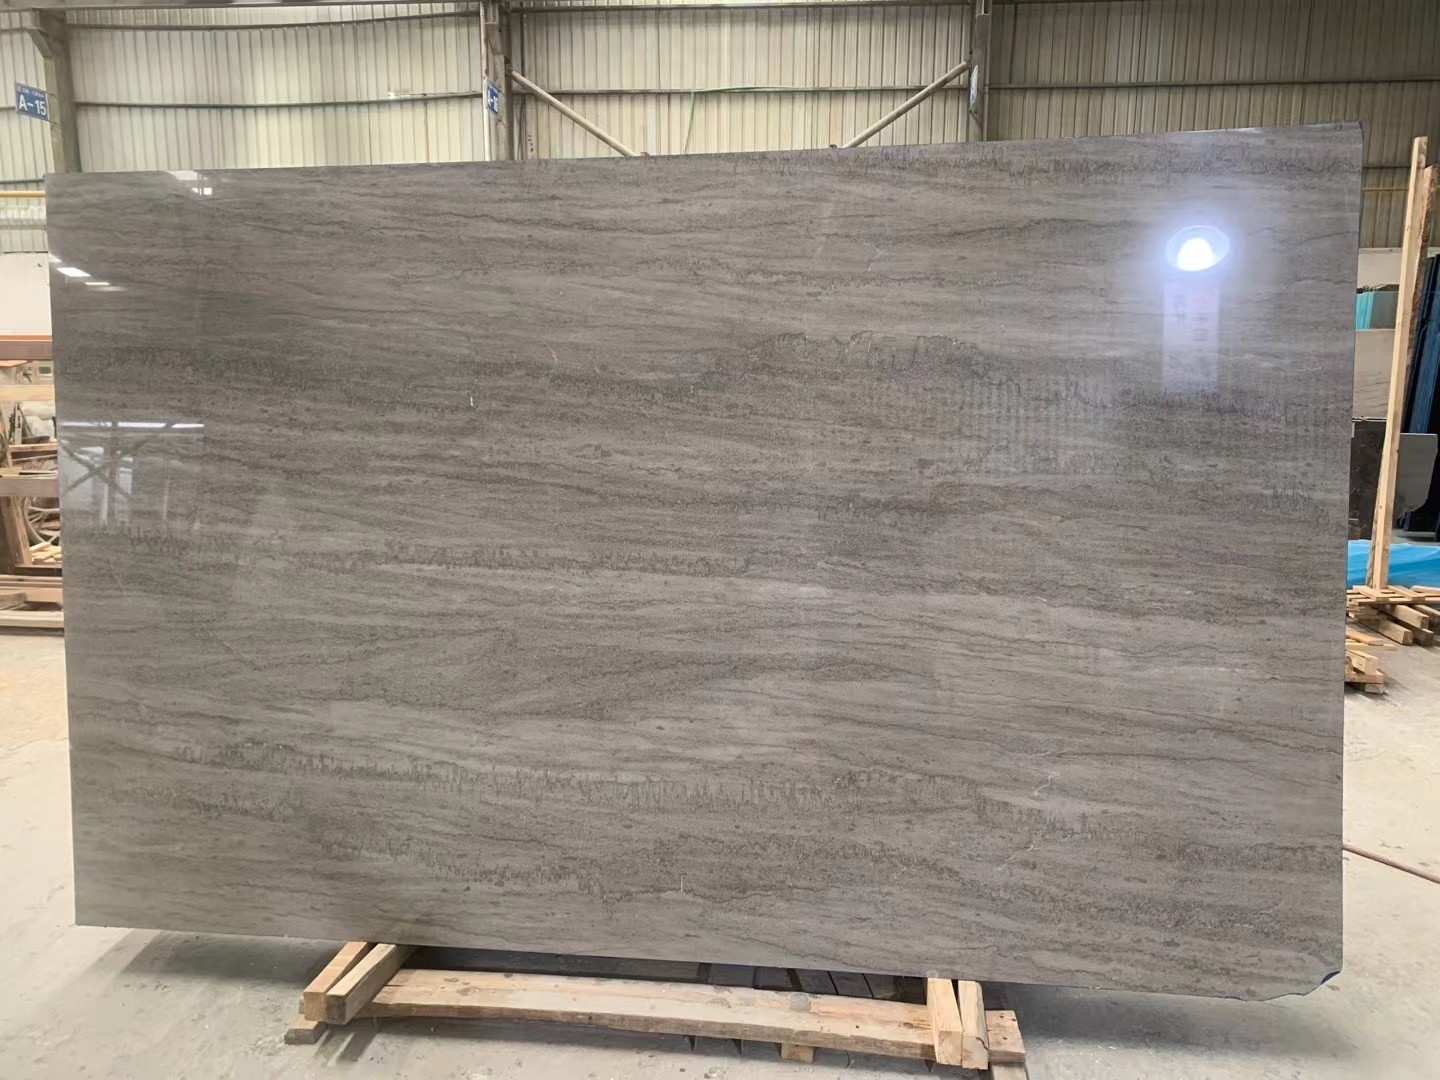 Crimean gray marble